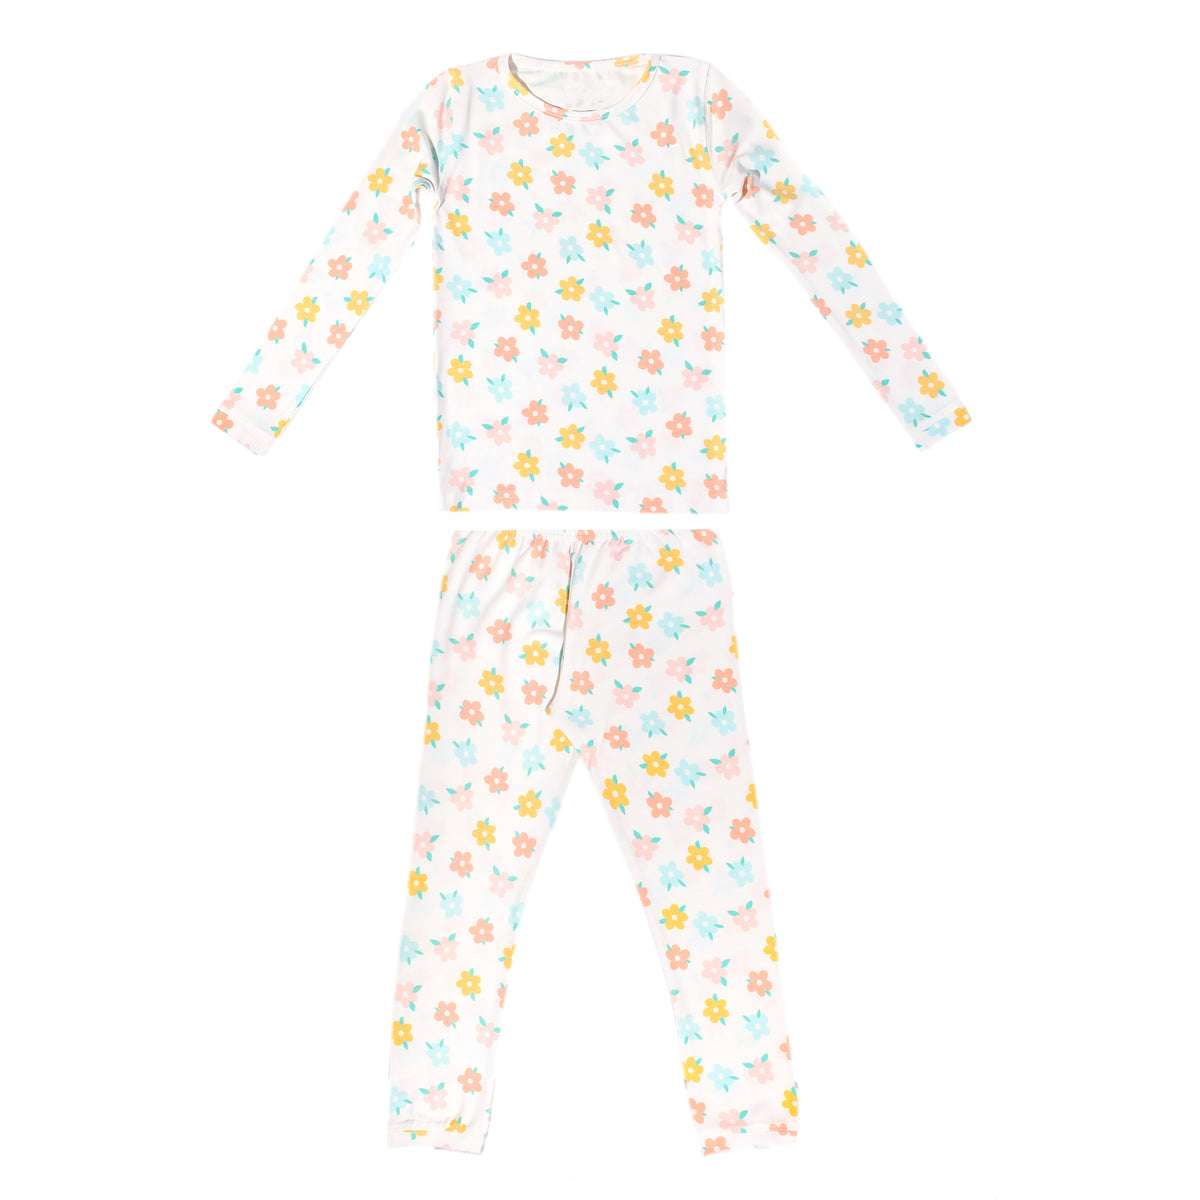 2pc Long Sleeve Pajama Set - Daisy